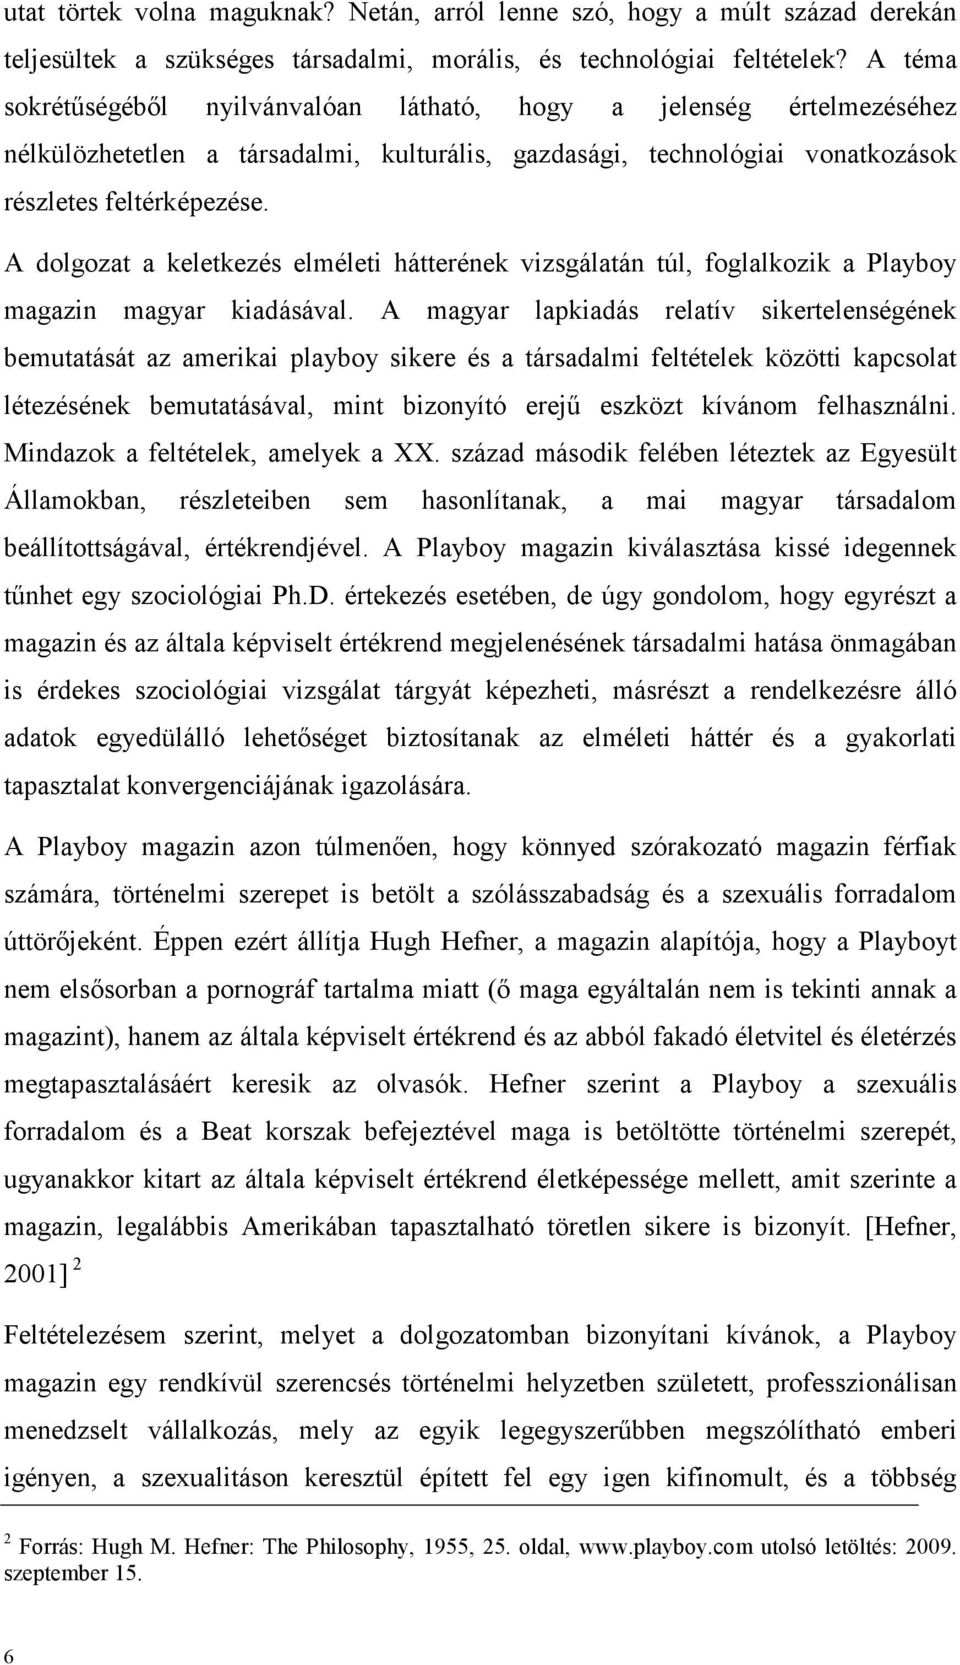 A dolgozat a keletkezés elméleti hátterének vizsgálatán túl, foglalkozik a Playboy magazin magyar kiadásával.